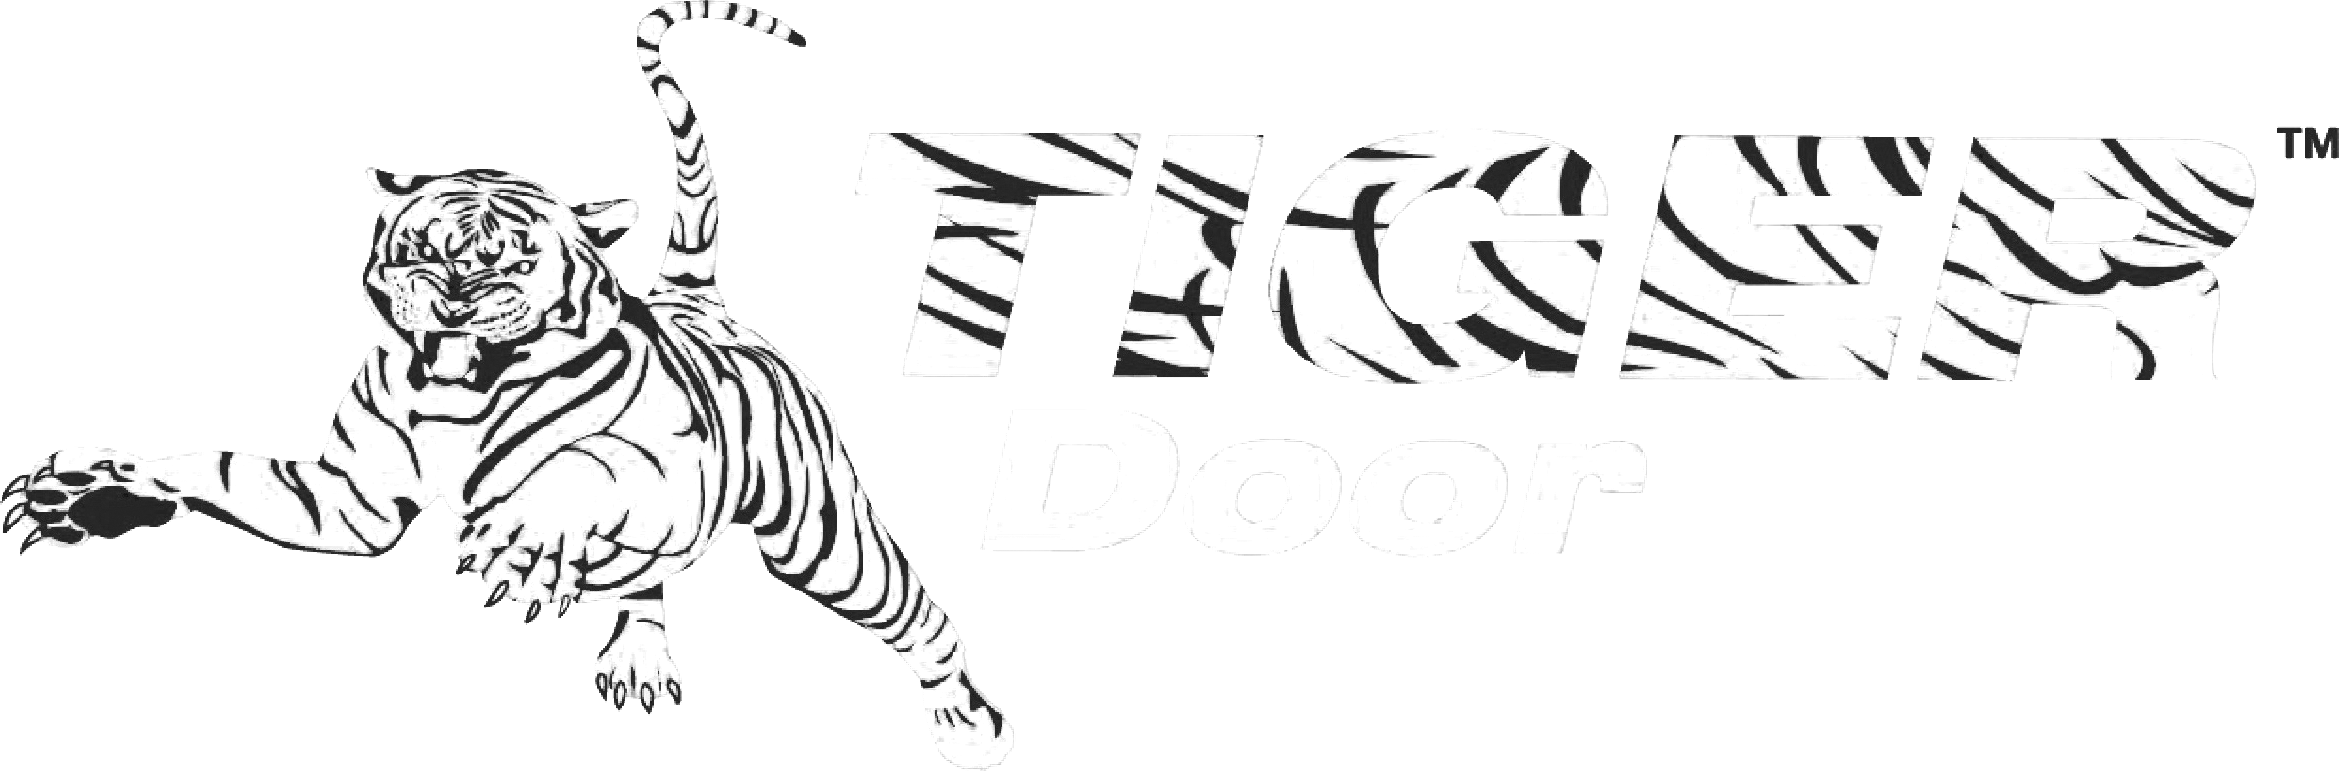 Tiger Door